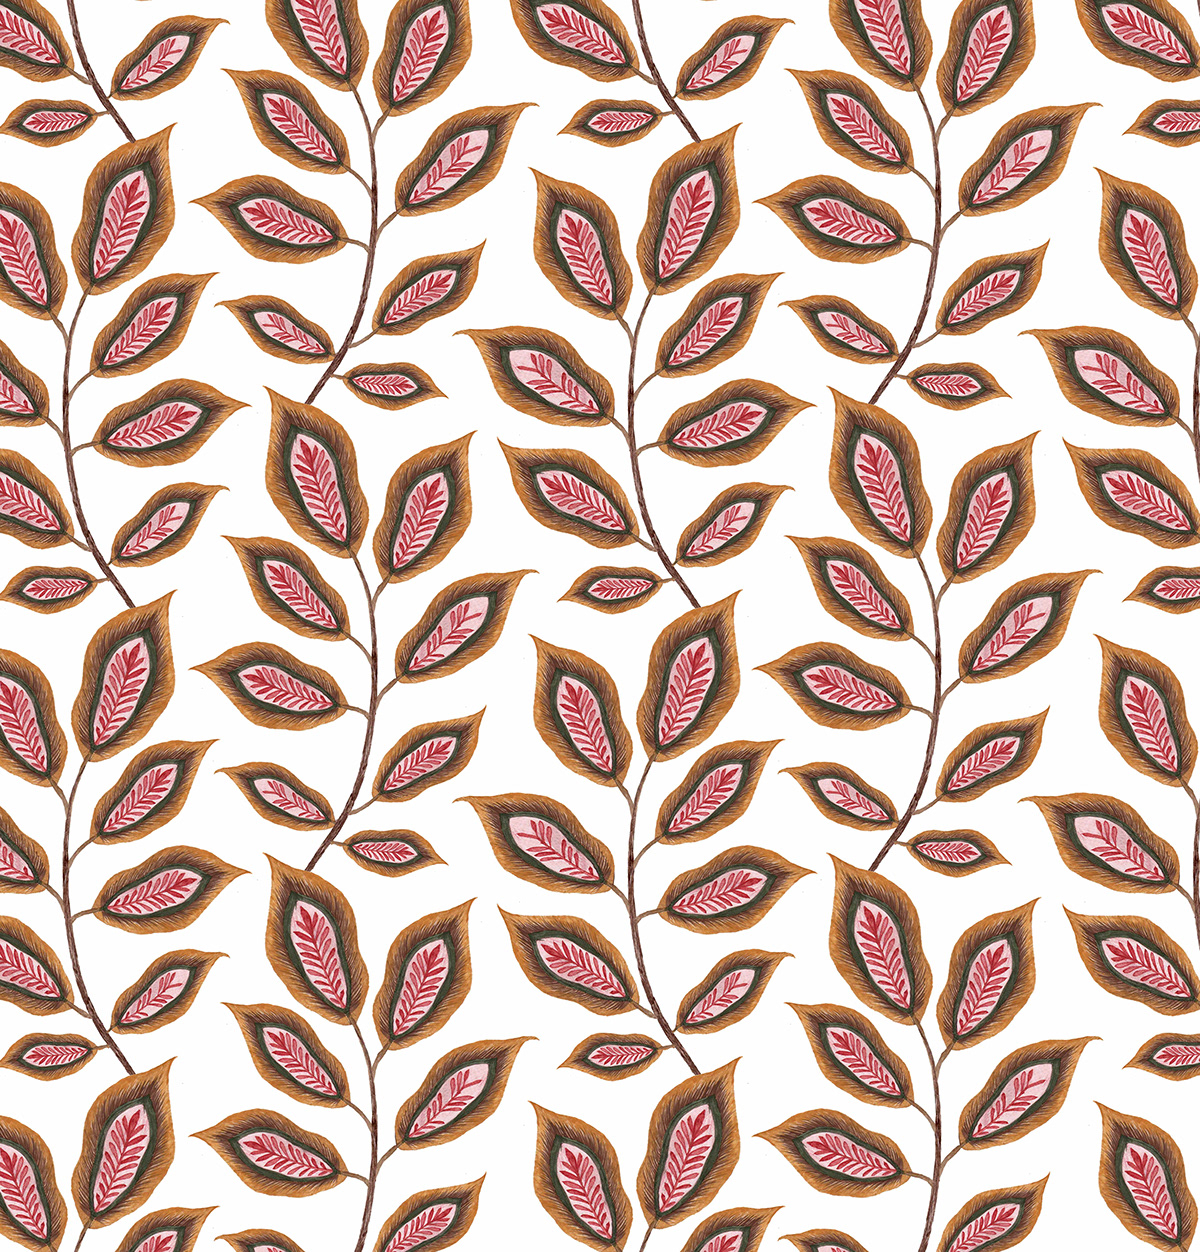 handdrawing artwork digital illustration concept art print design  textile design  pattern floral watercolor Nature